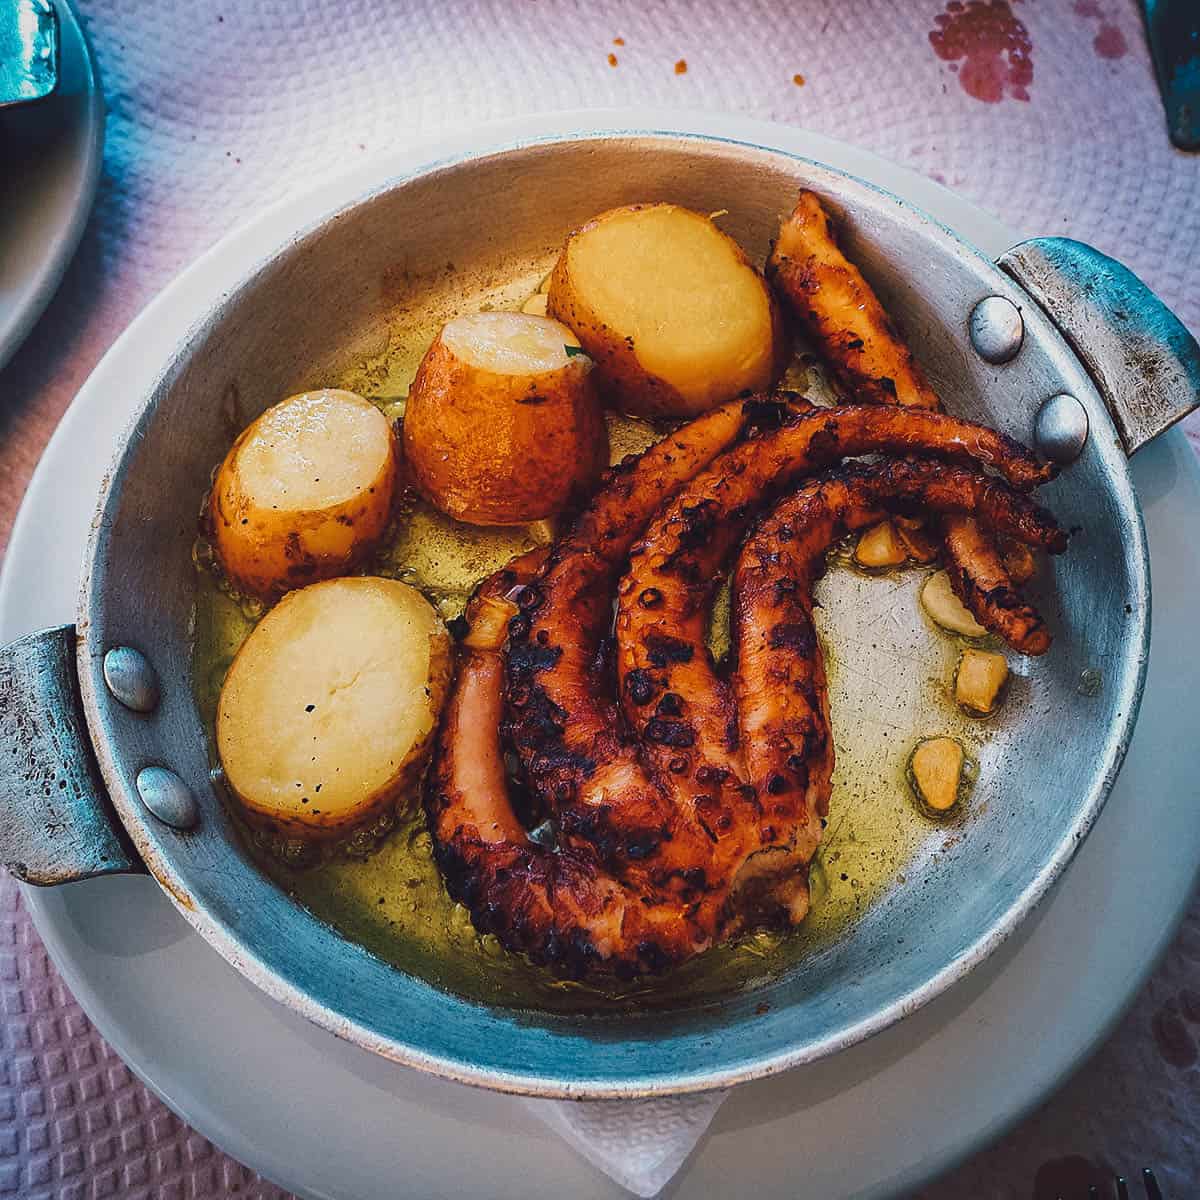 Polvo à lagareiro, Portuguese octopus in the lagareiro-style